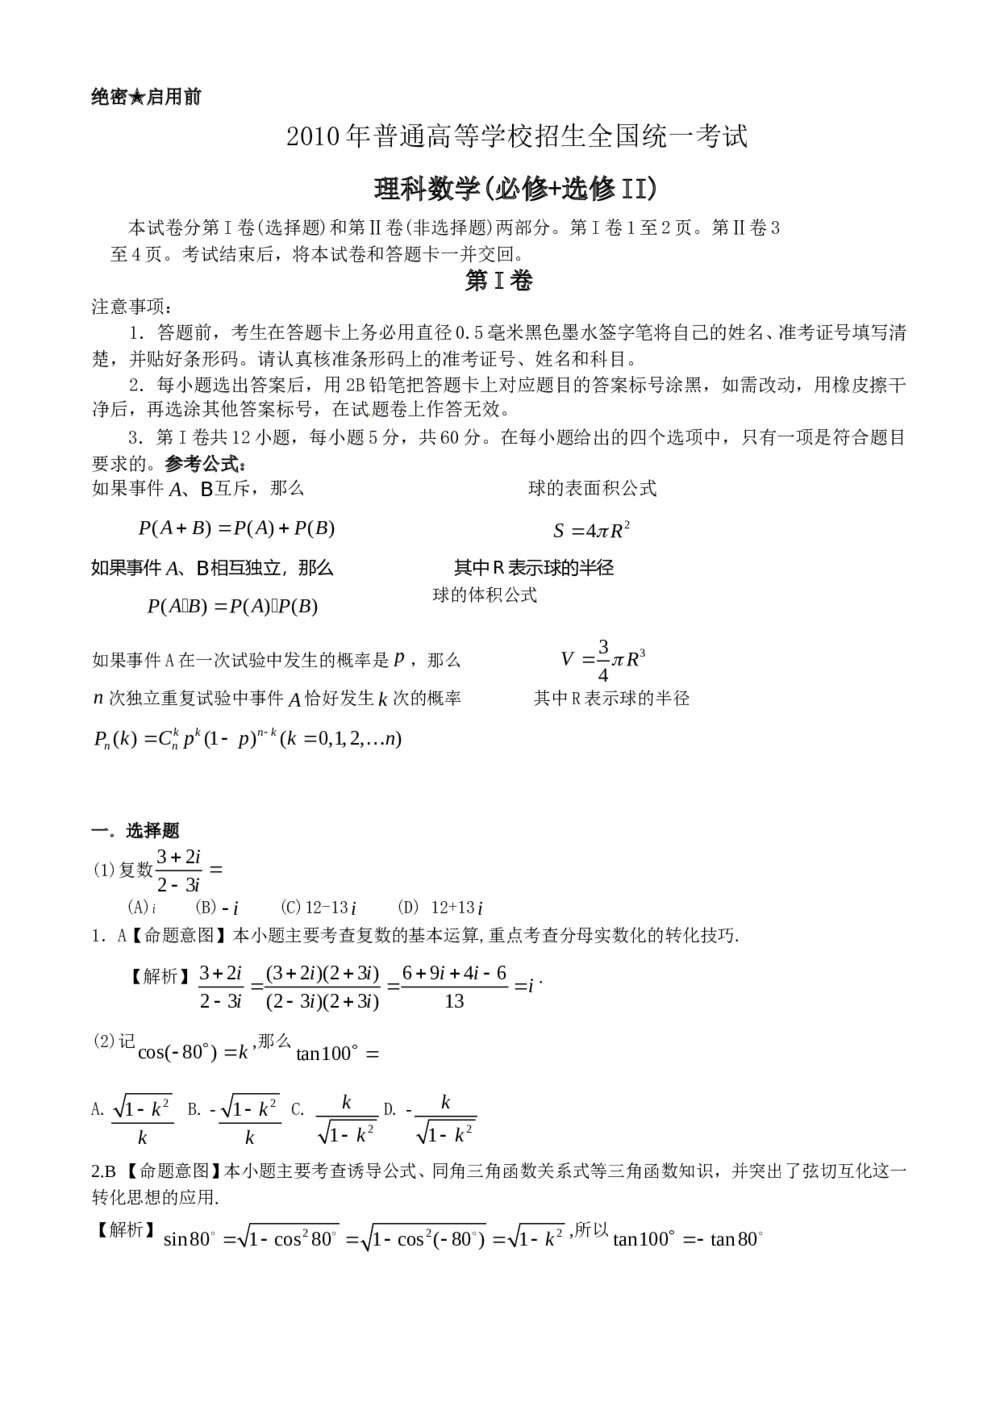 (理全国Ⅰ-Ⅱ卷)高考数学理科试卷及答案解析